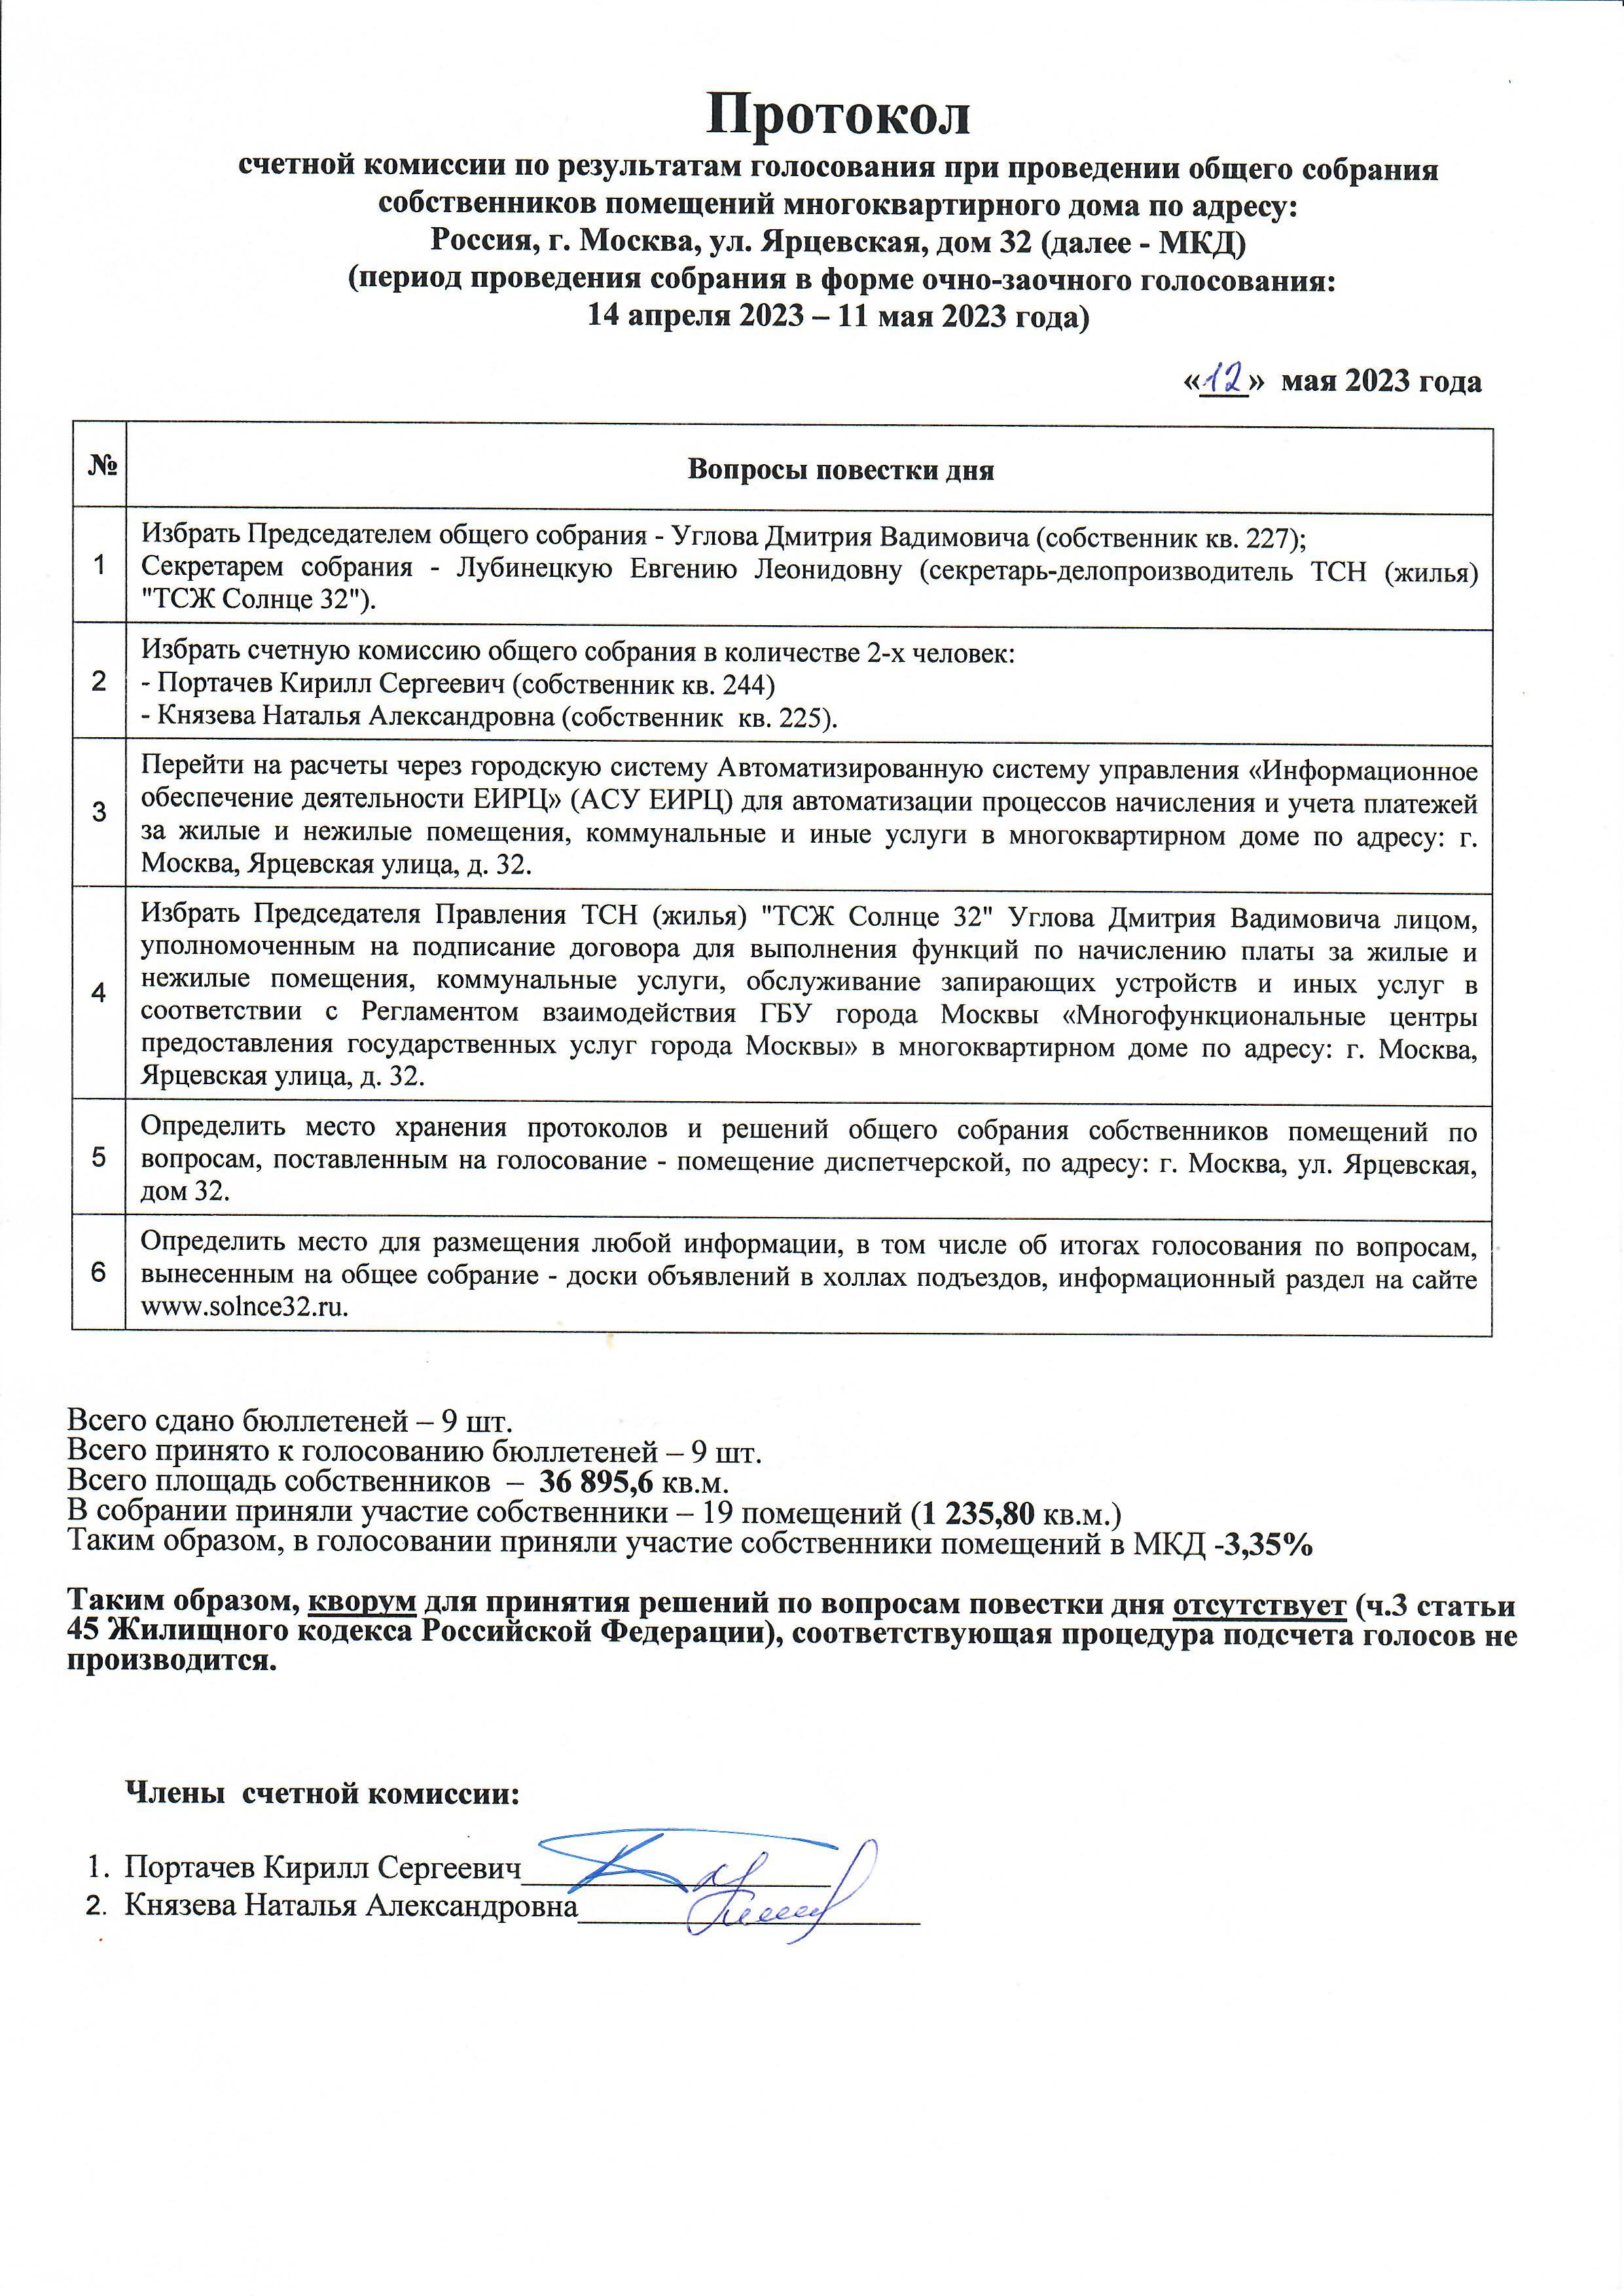 Протокол счетной комиссии от 12.05.2023 г.